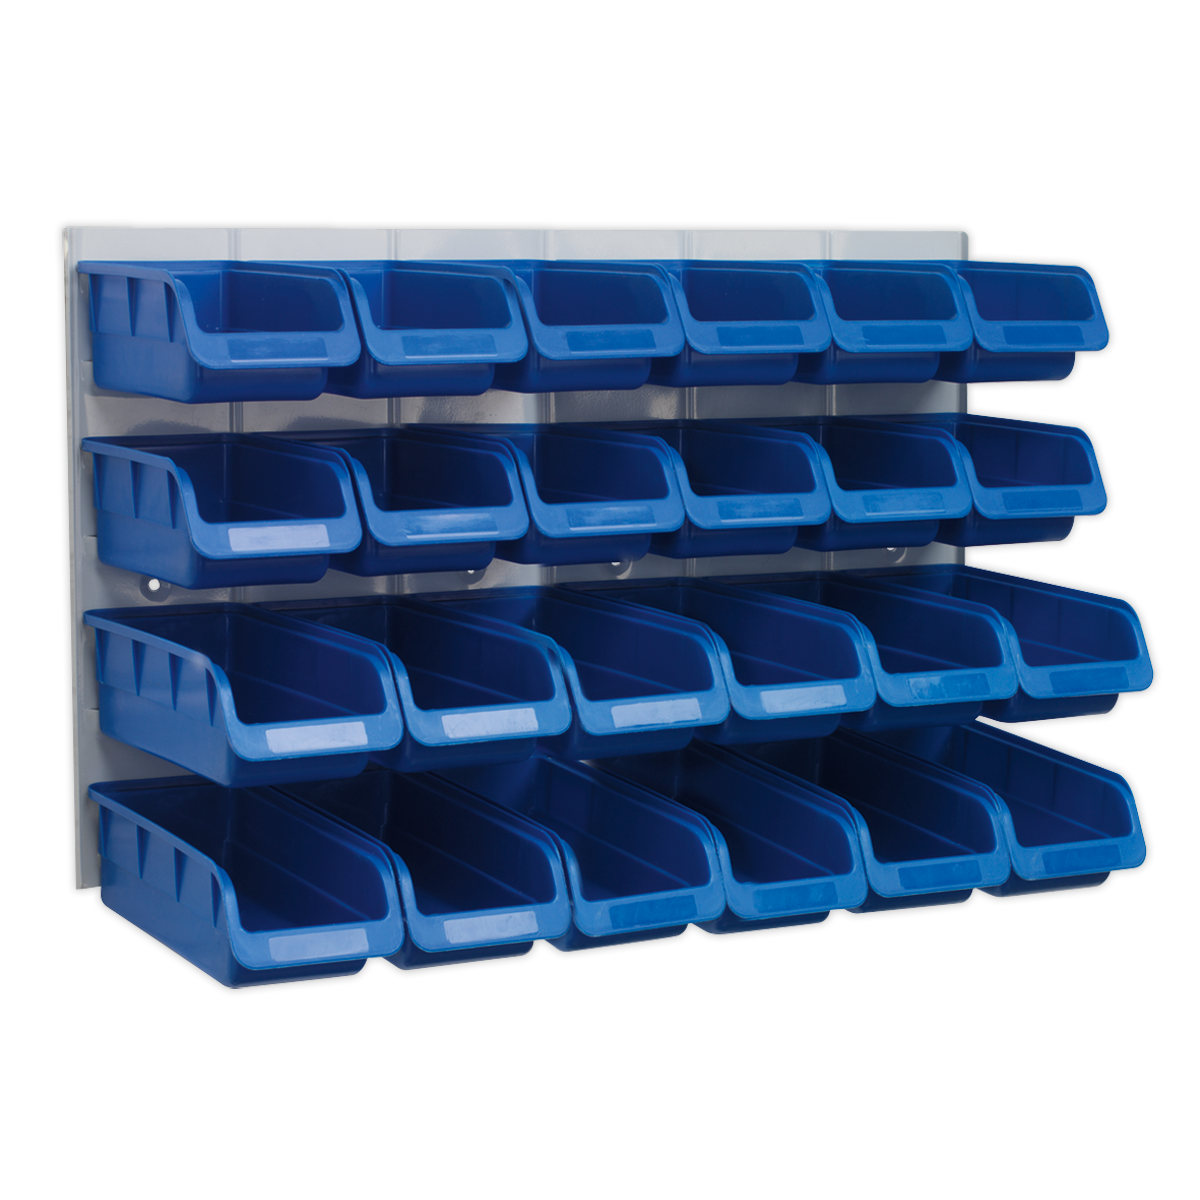 Sealey Bin & Panel Combination 24 Bins - Blue